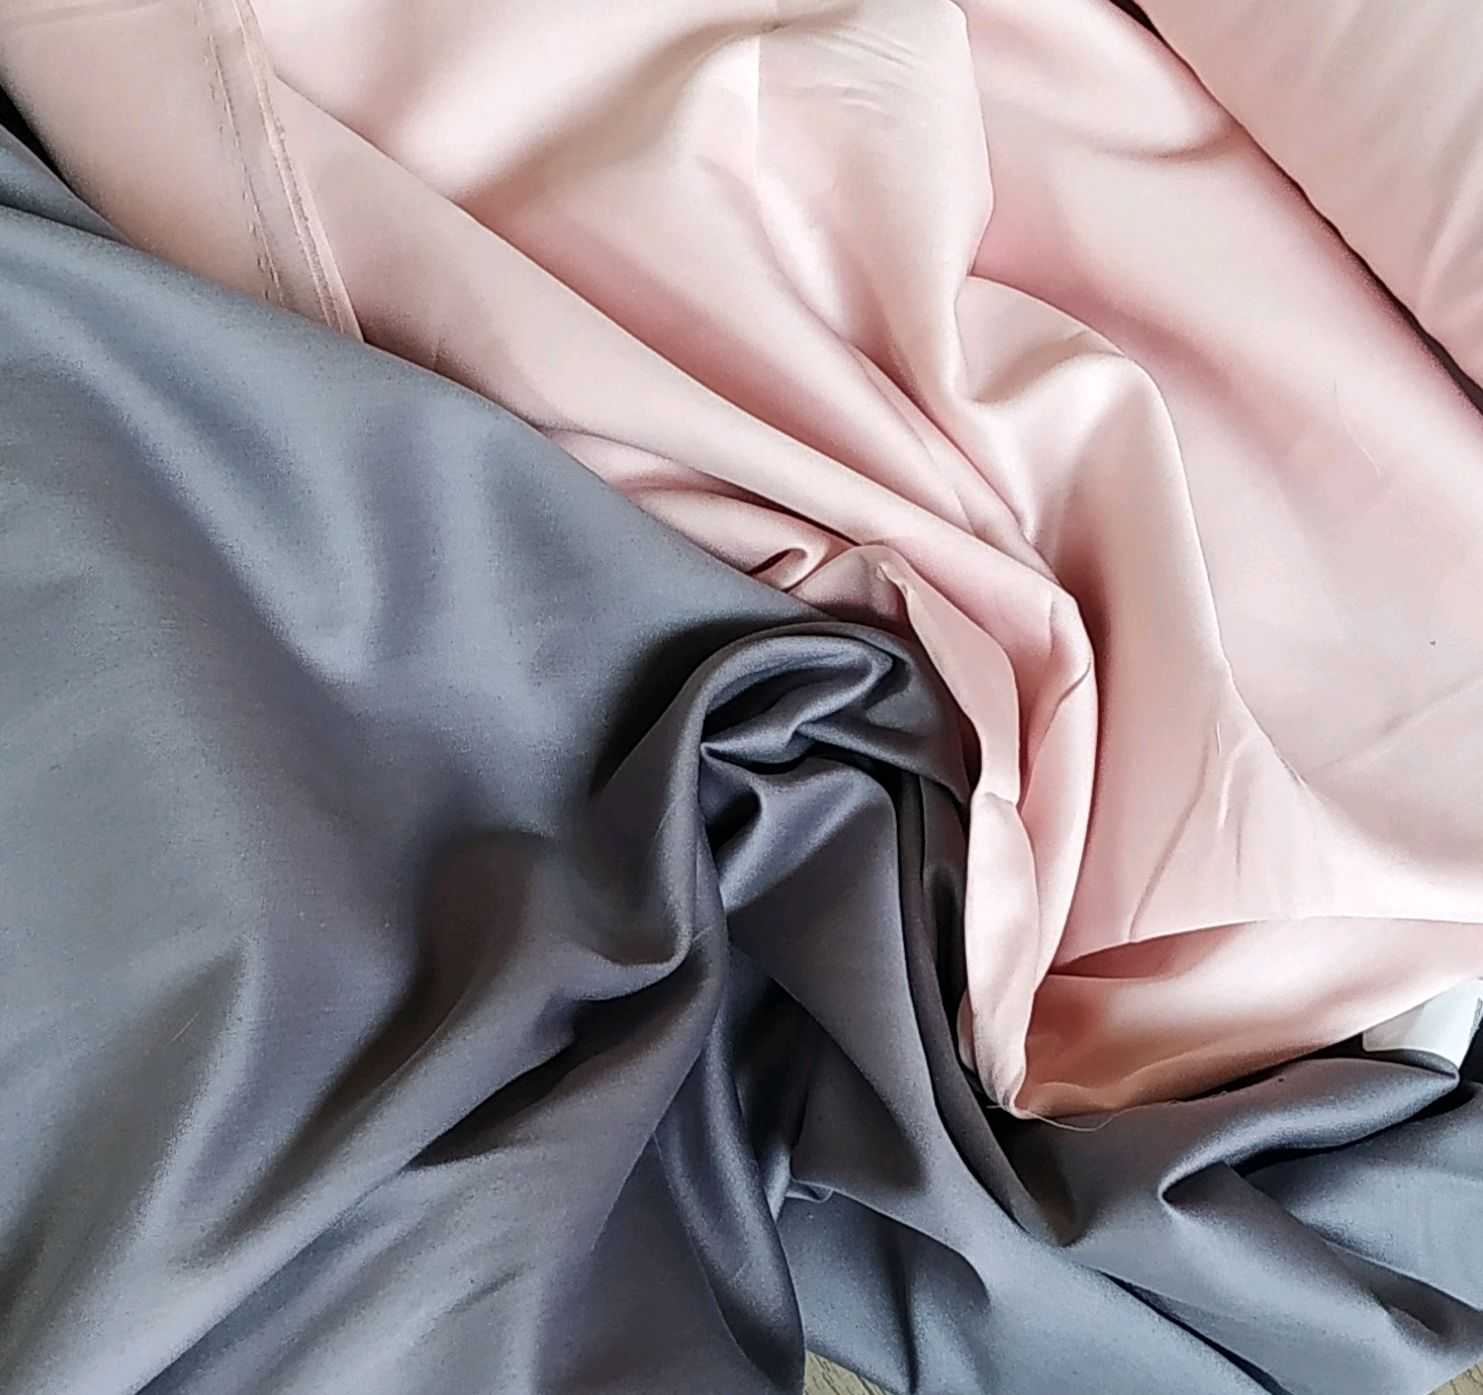 Микросатин материал для постельного белья, отзывы о ткани и прочие сферы применения Его состав и свойства как одного из лучших материалов